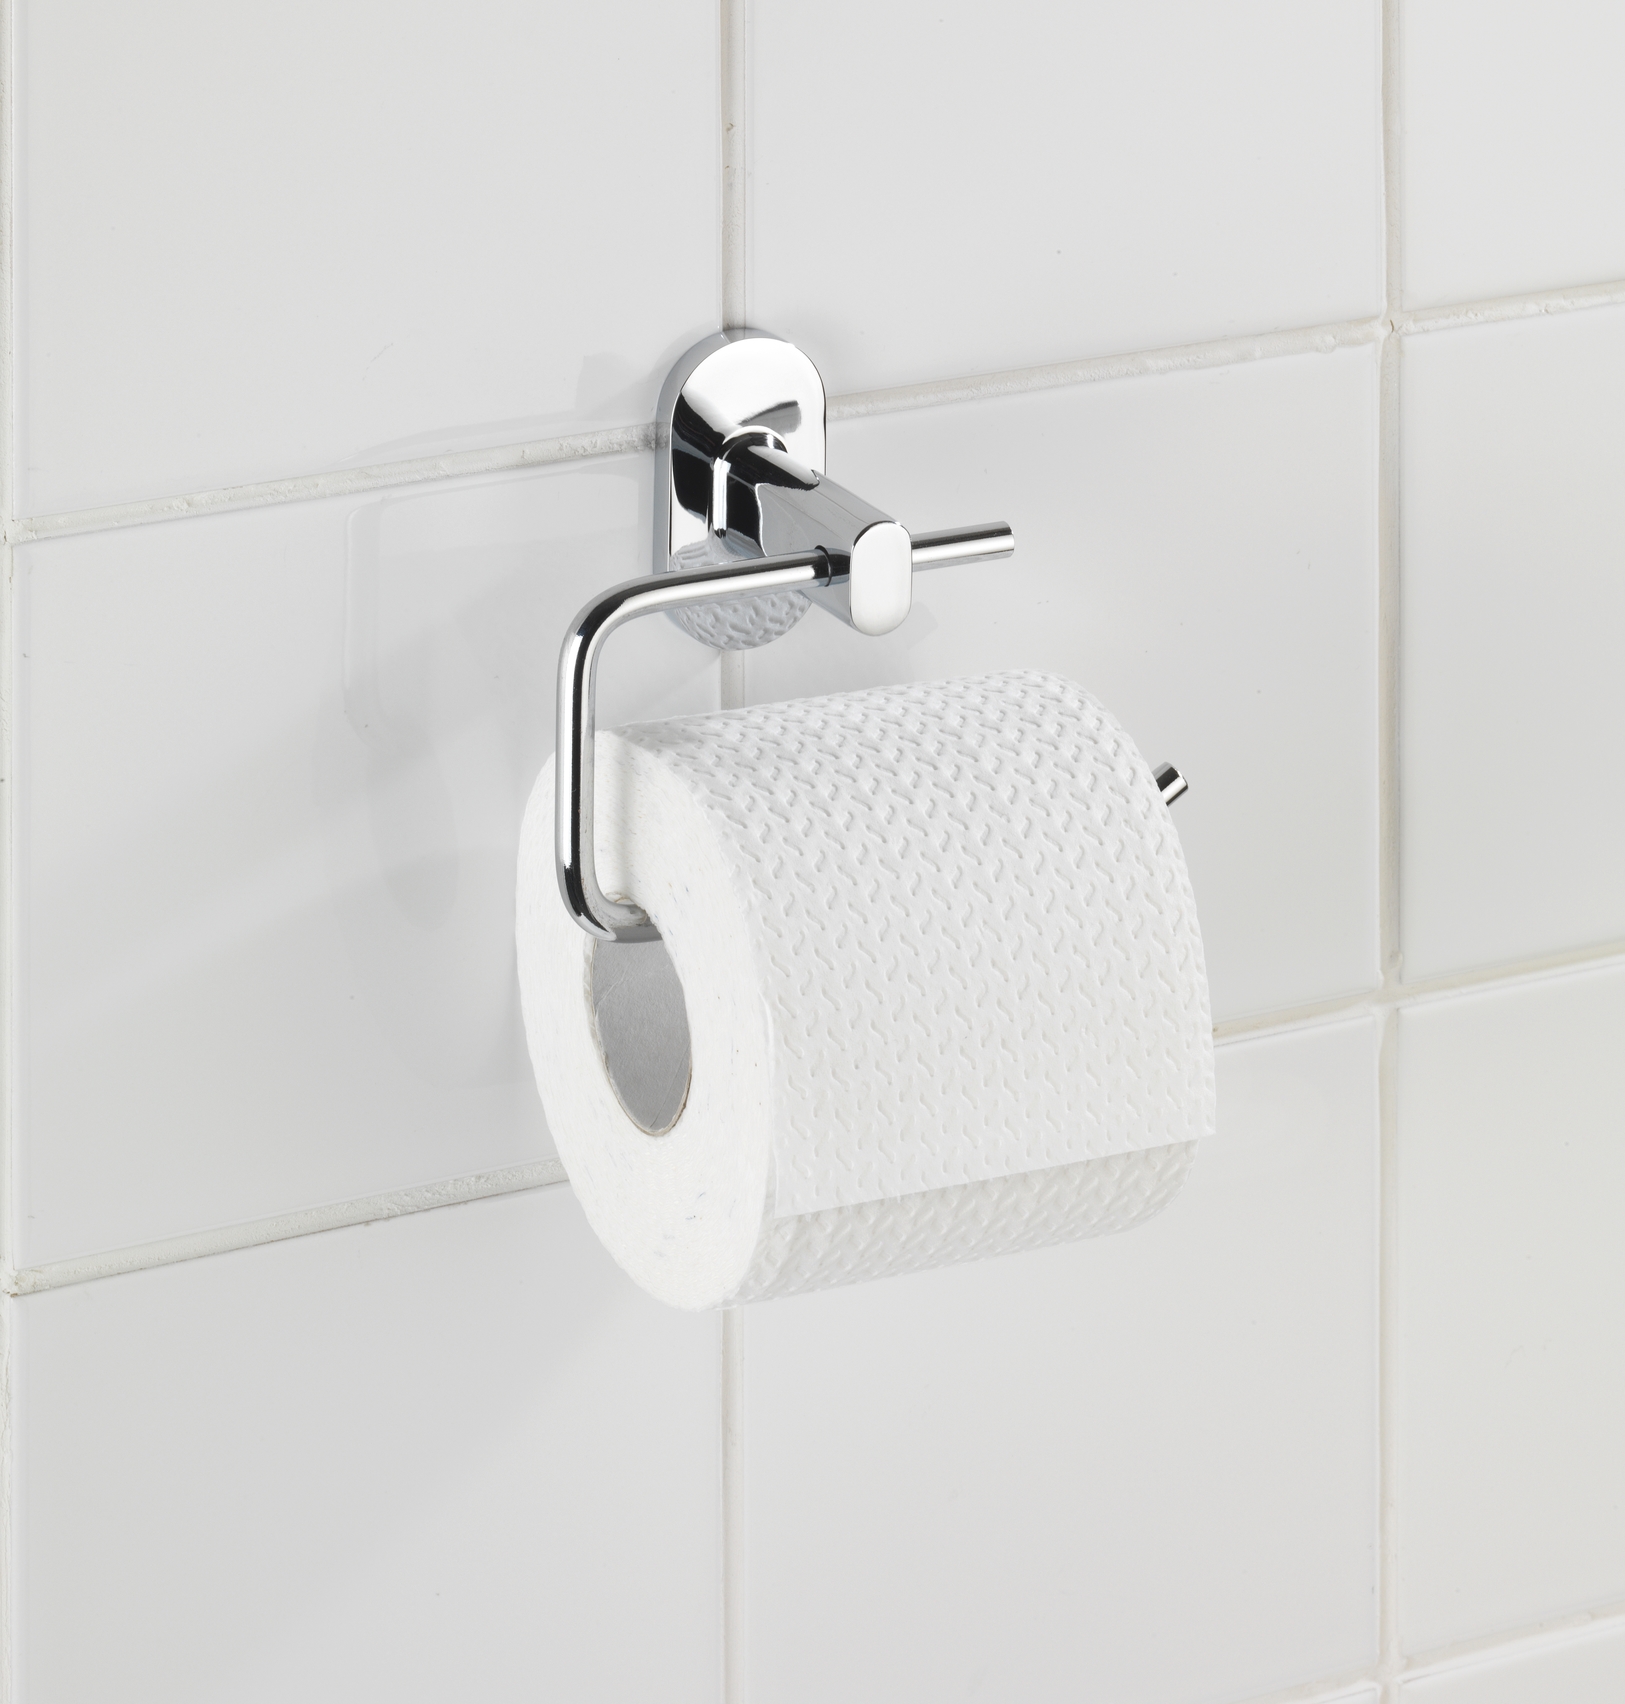 Wenko Power-Loc® Toilettenpapierhalter Puerto Rico 13,5 x 10,5 x 6,5 cm, ohne Deckel, silber glänzend. Befestigen ohne bohren